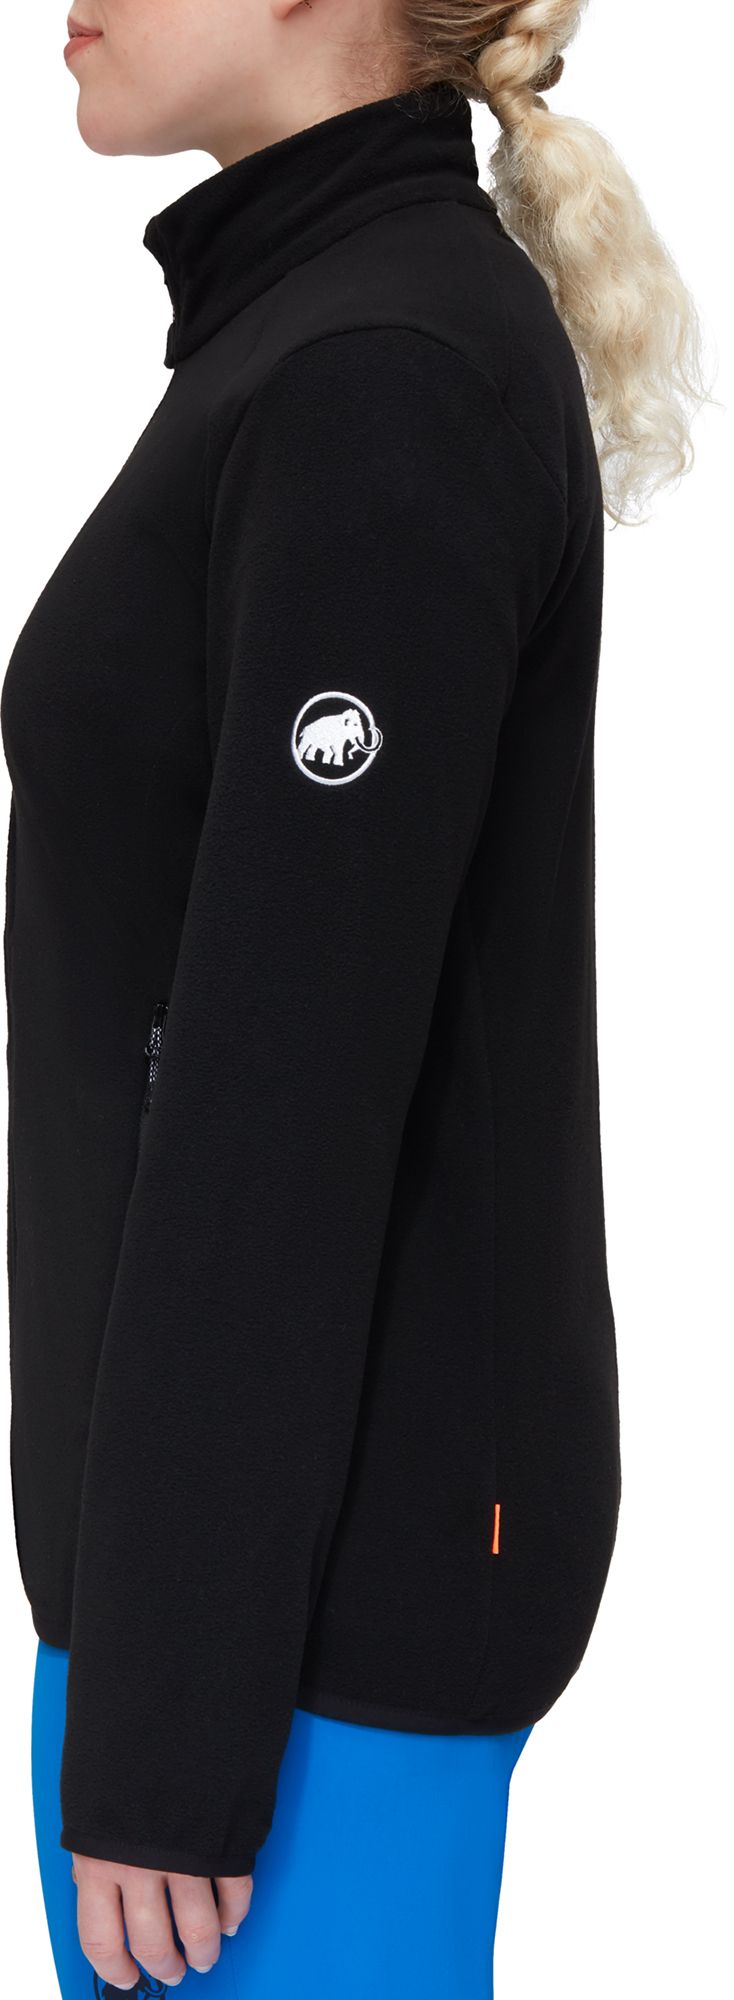 Mammut Women's Innominata Light Mid-Layer Jacket